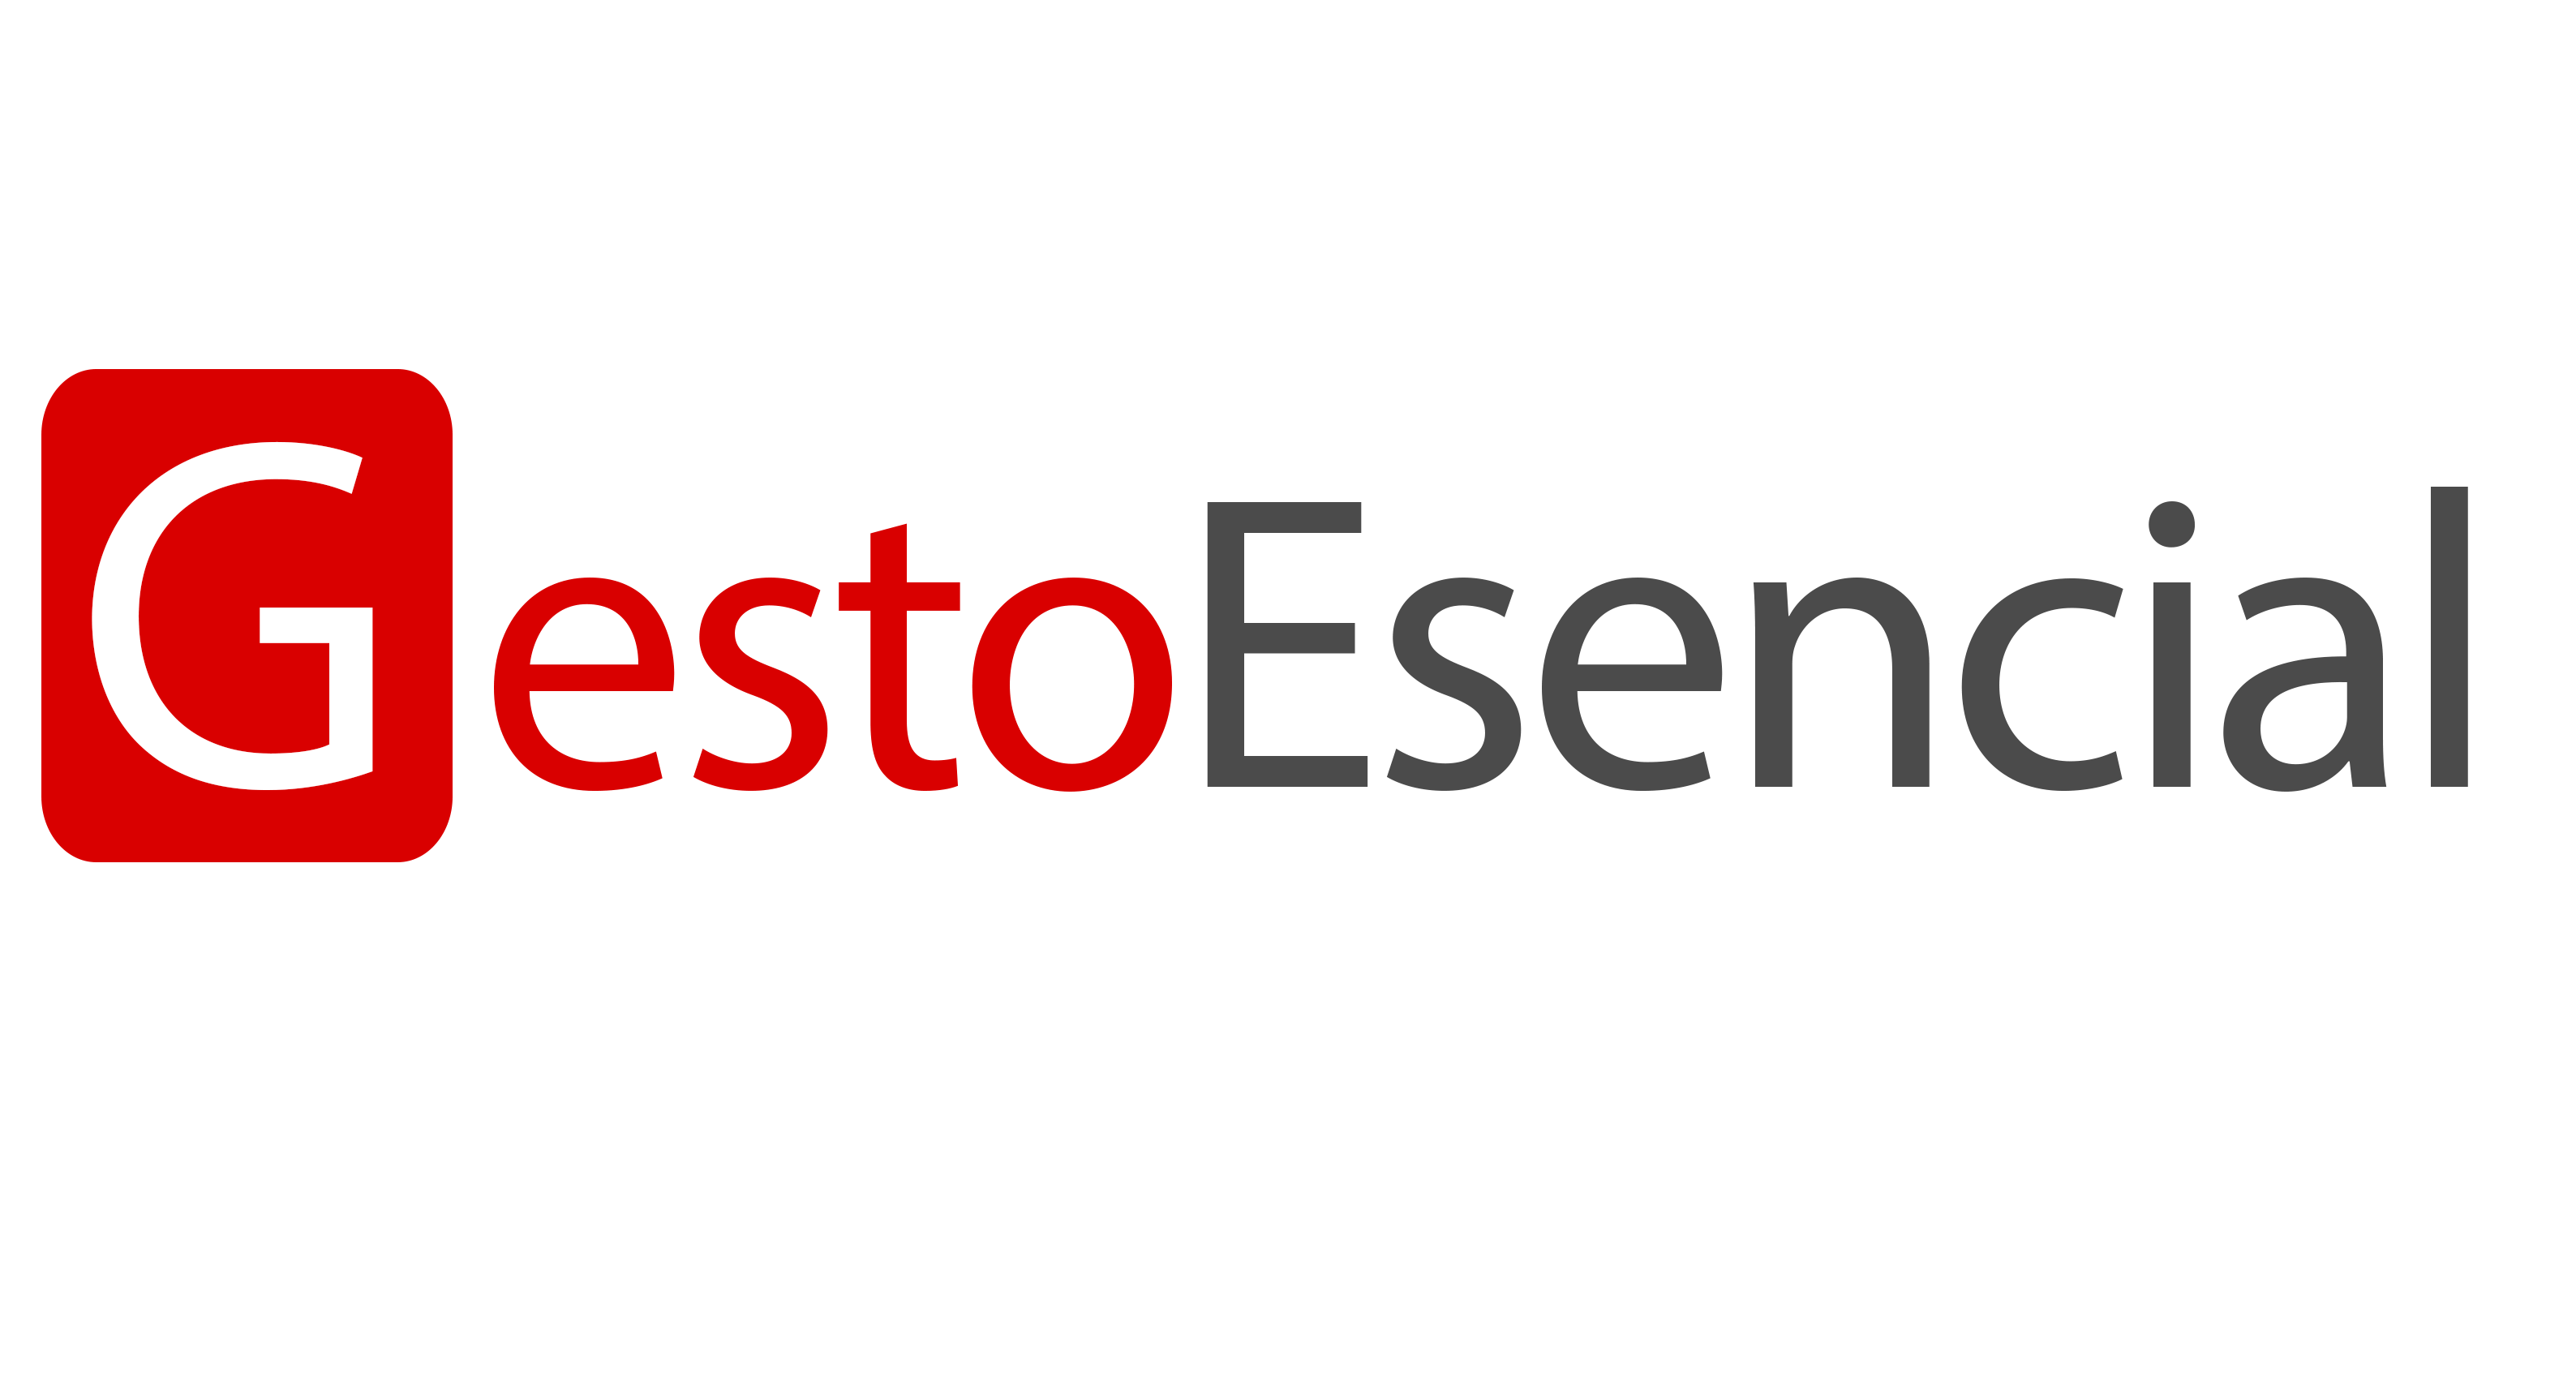 Gestoesencial - Tu asesoría online de Servicios básicos